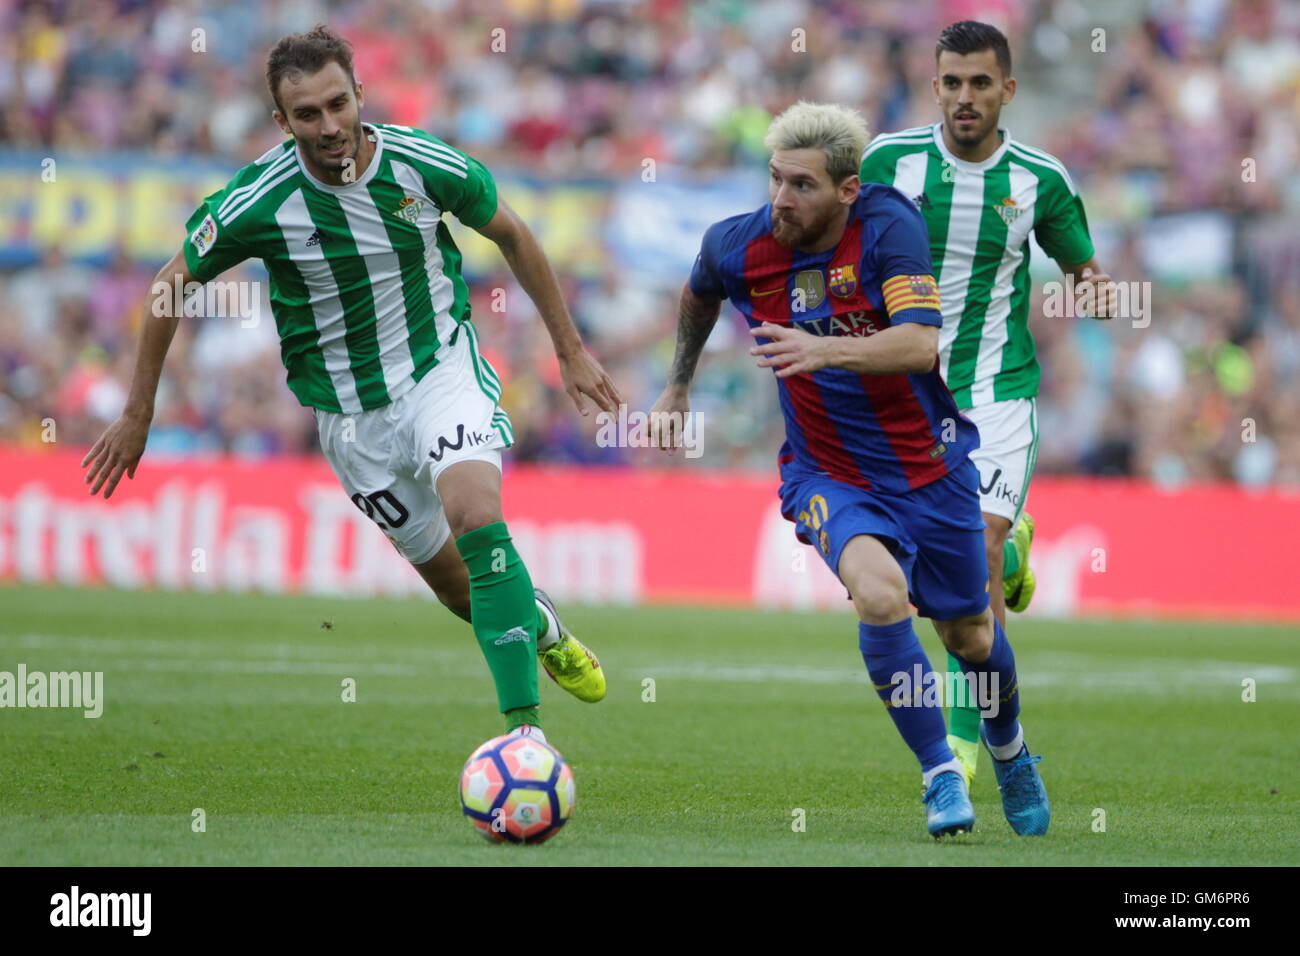 08/20/2016. Camp Nou, Barcelona, Espagne. Lionel Messi en action pendant le match de Liga espagnole FC Barcelone - betis Séville Banque D'Images